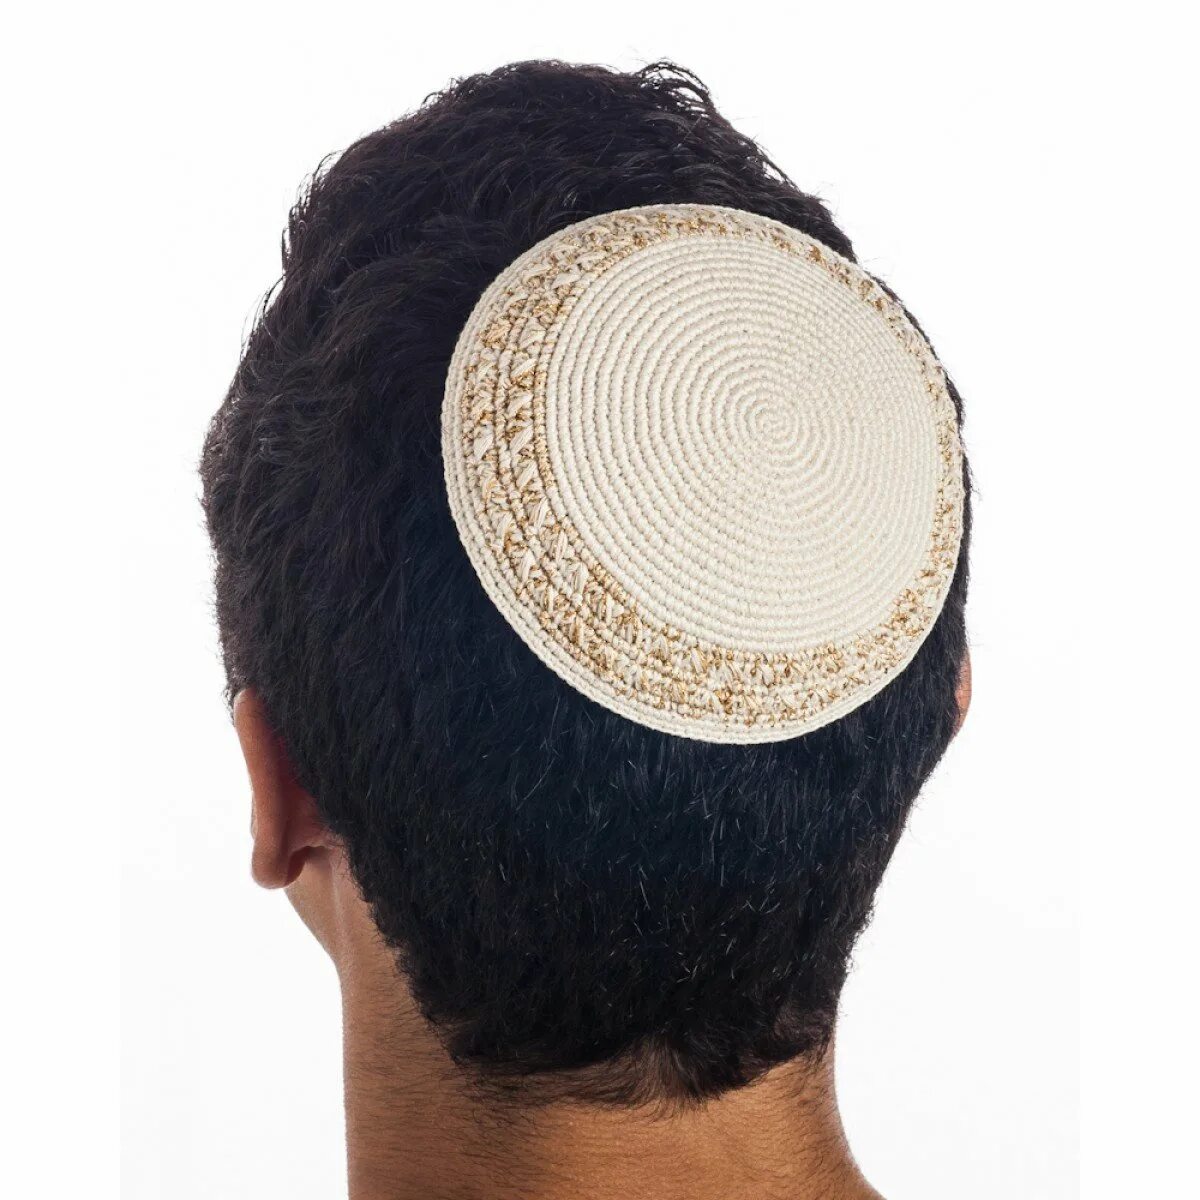 Круглая мужская шапочка. Еврейская шапочка ермолка. Еврейская шапка штраймл. Еврейская мужская Национальная шапка ермолка. Ермолка тюбетейка.